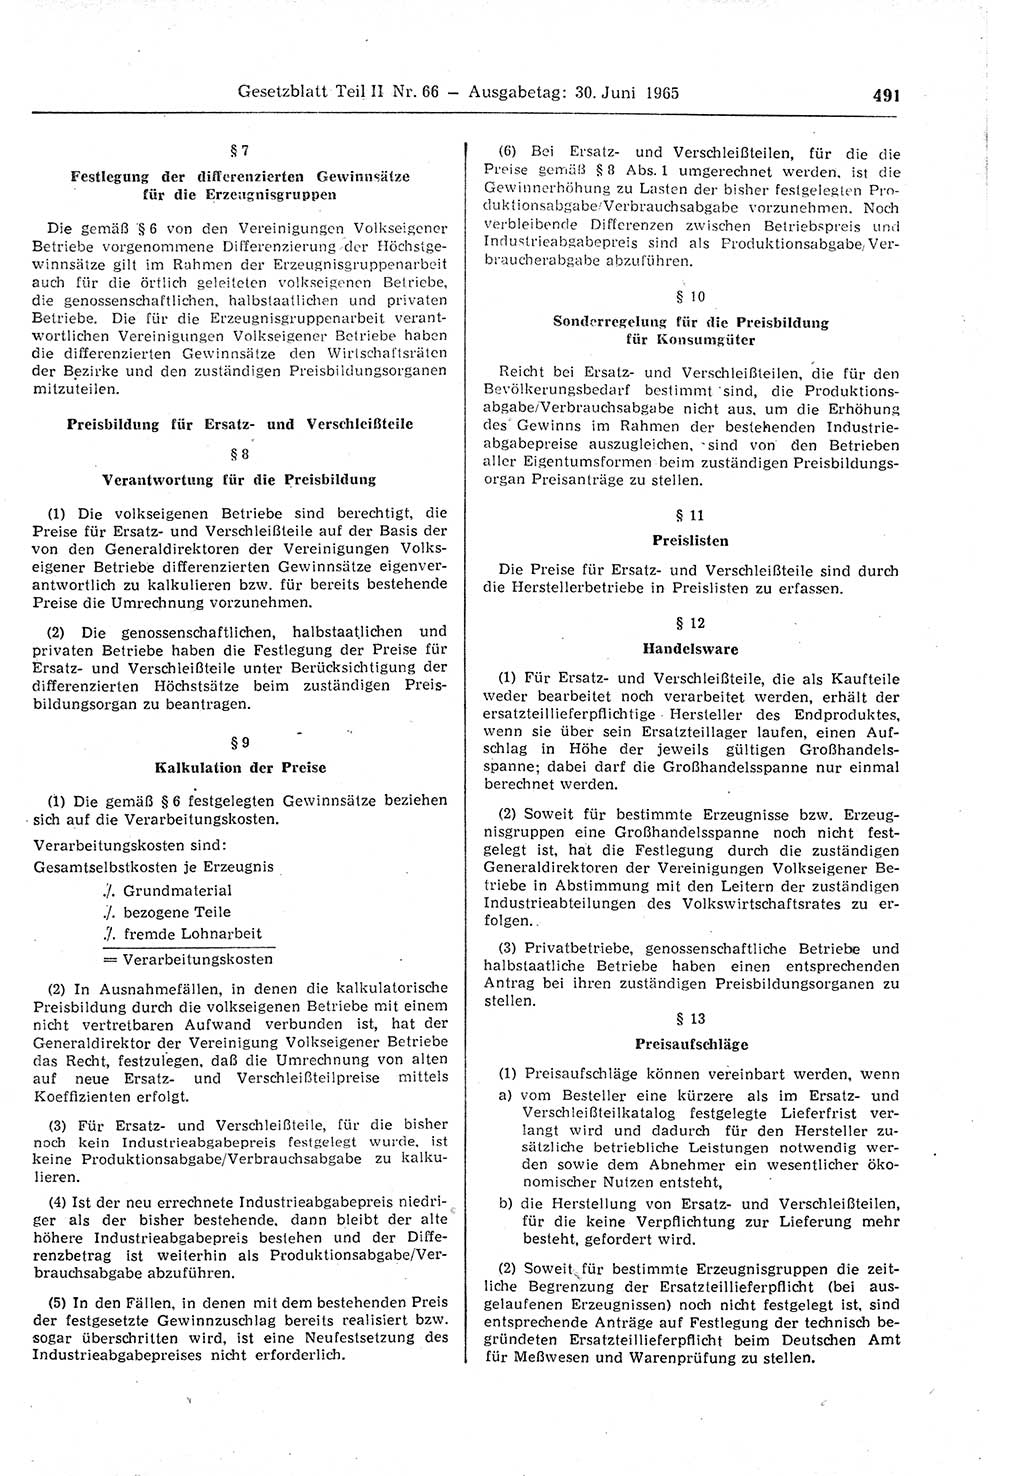 Gesetzblatt (GBl.) der Deutschen Demokratischen Republik (DDR) Teil ⅠⅠ 1965, Seite 491 (GBl. DDR ⅠⅠ 1965, S. 491)